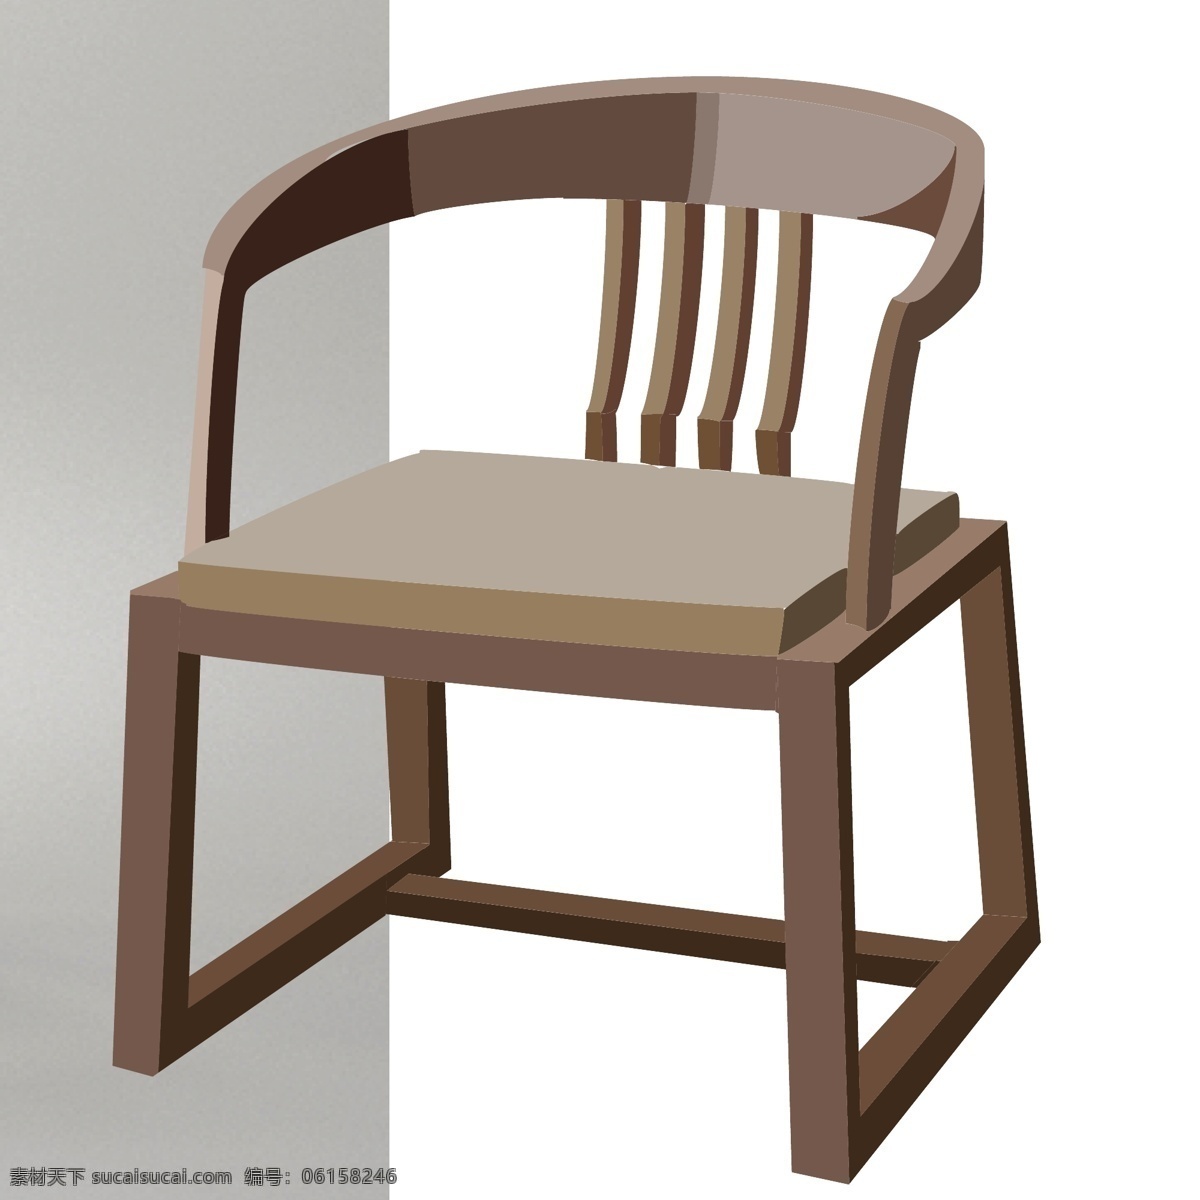 木头 家具 木椅 插画 椅子 木家具 木制桌椅 木头家具 传统家具 老式椅子 木材插画